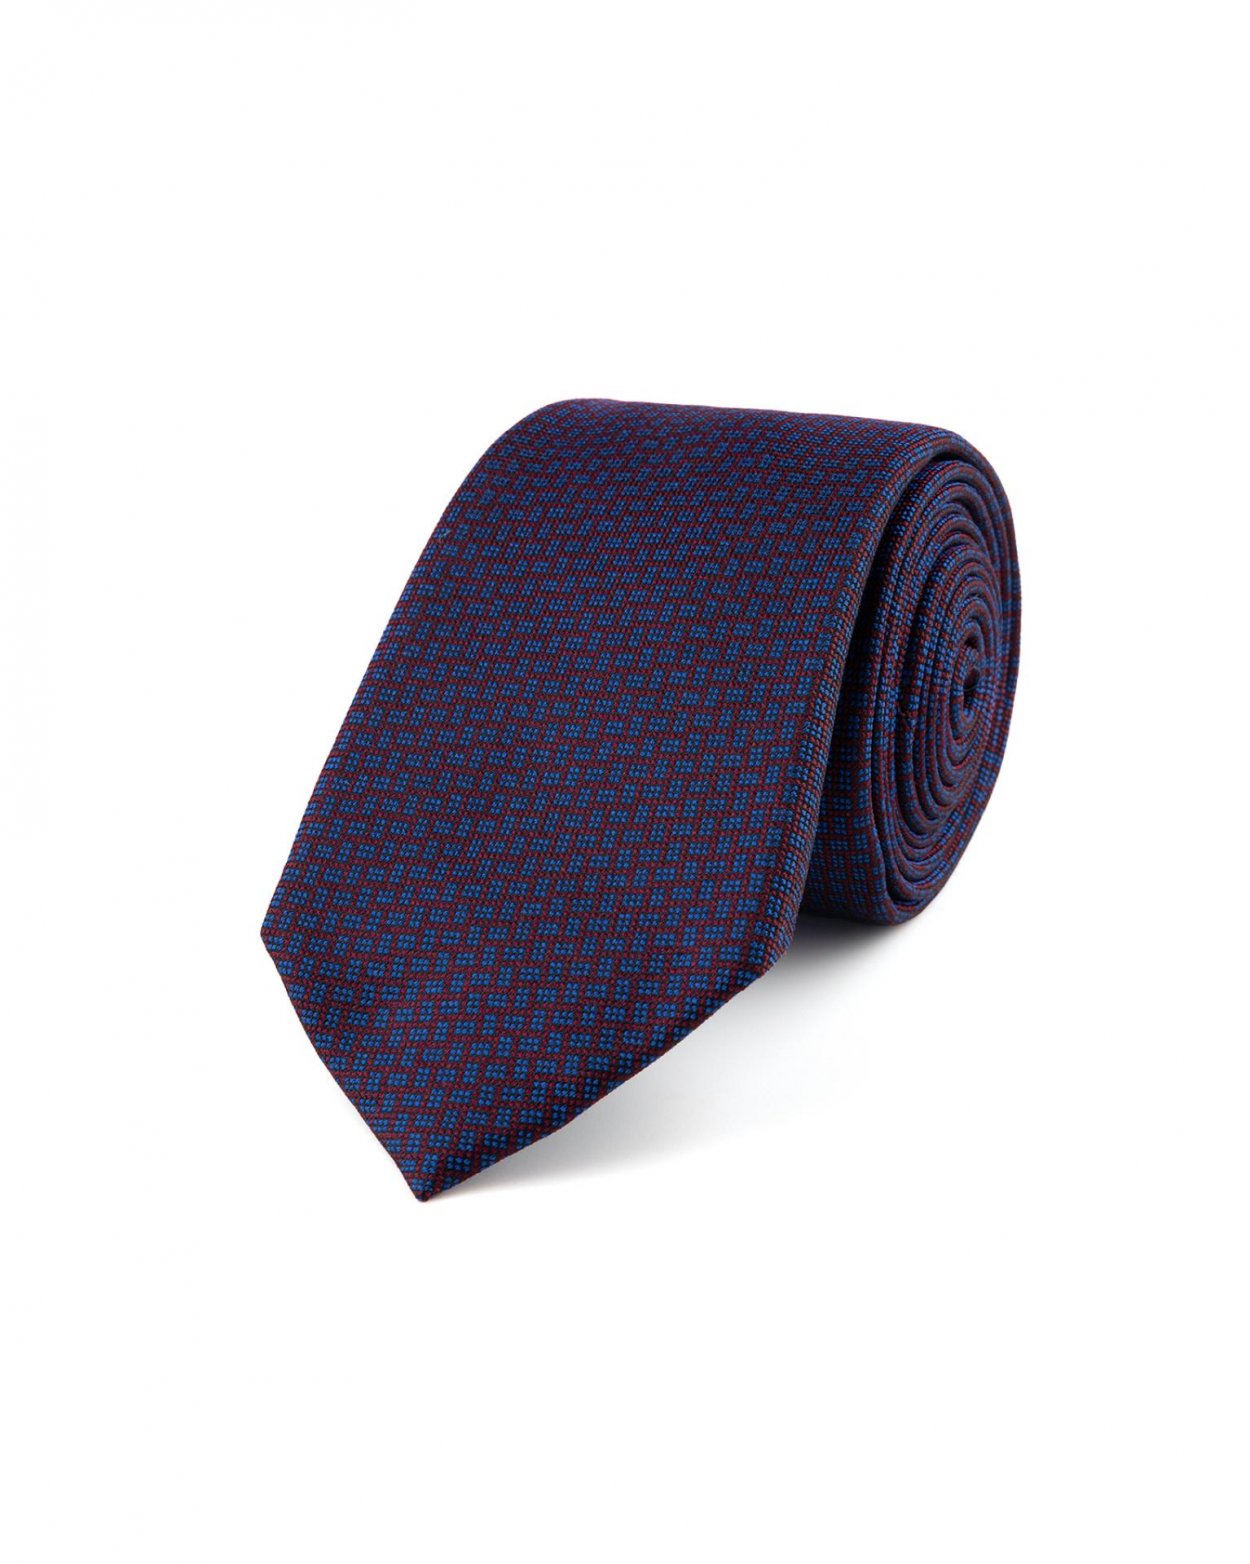 Vínová hedvábná kravata s jemným vzorem